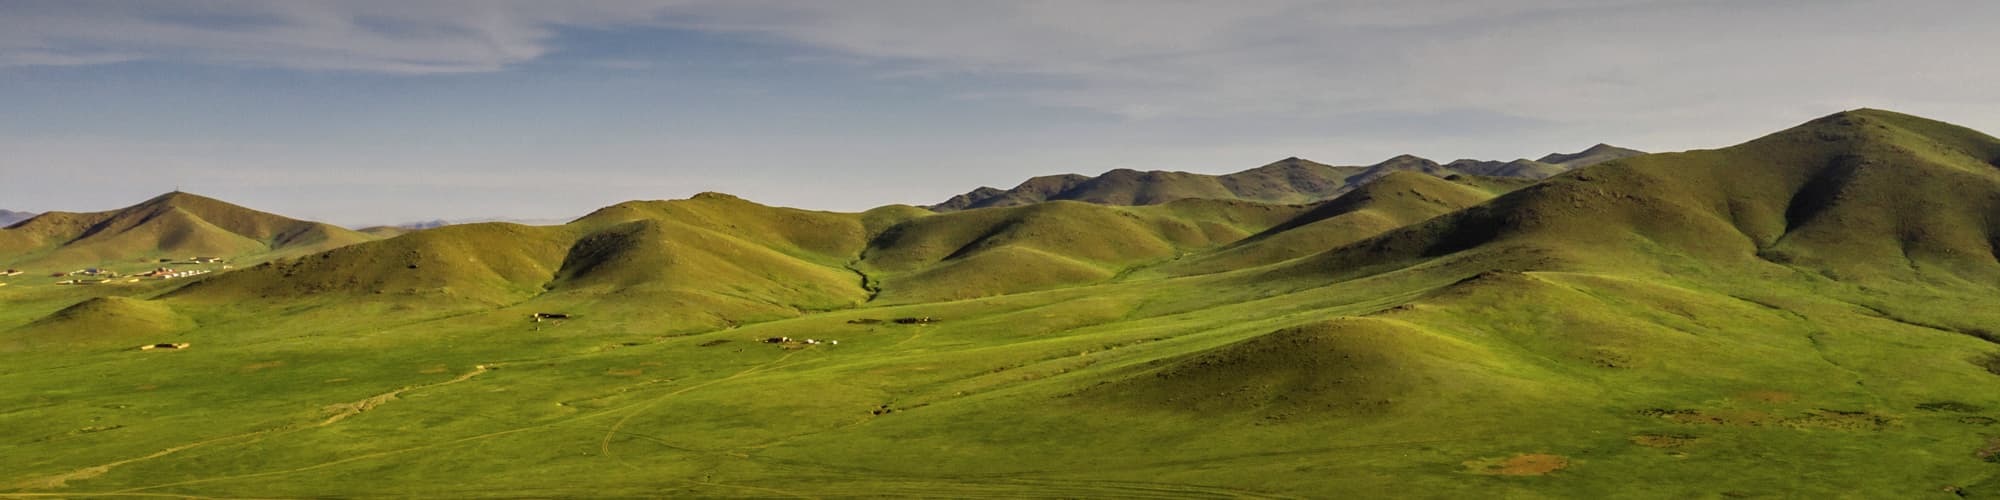 Randonnée Mongolie © Robert Churchill / iStock